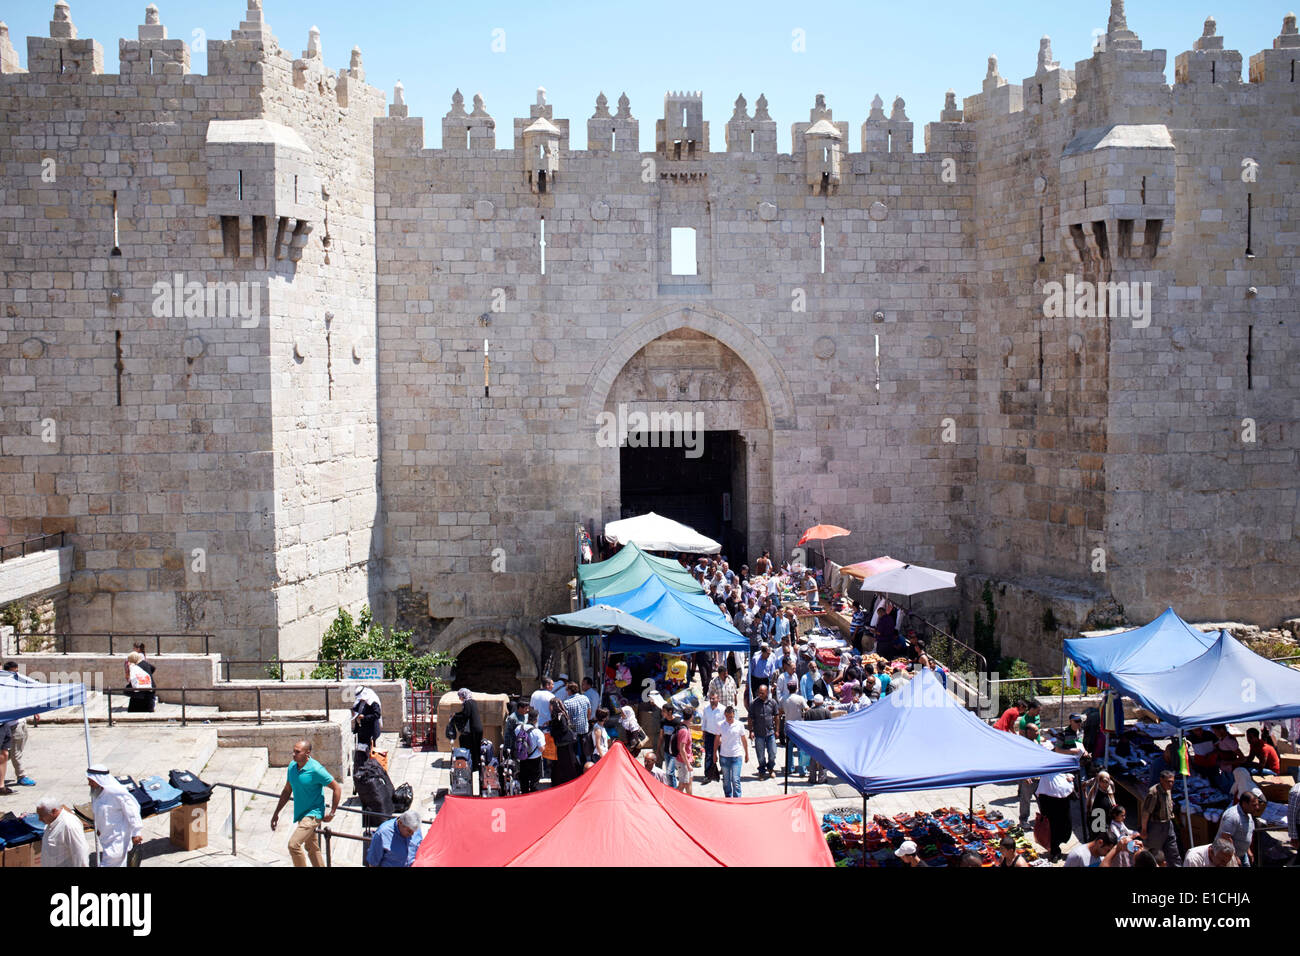 Image result for outside damascus gate jerusalem images